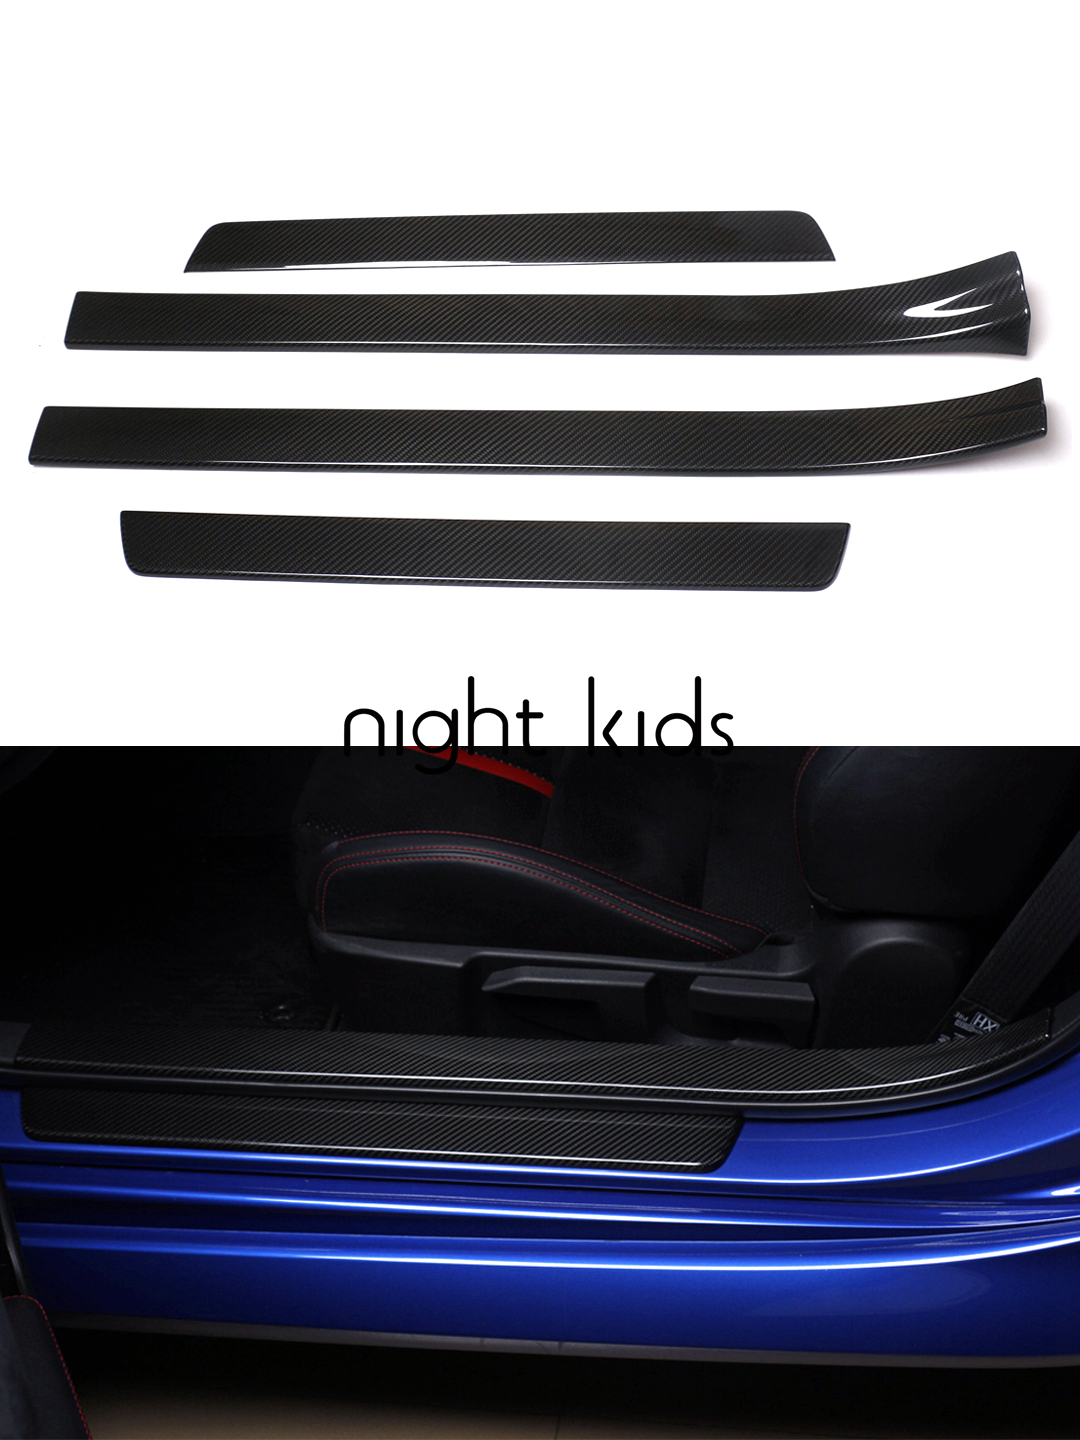 NightKids迎宾踏板门槛条碳纤维